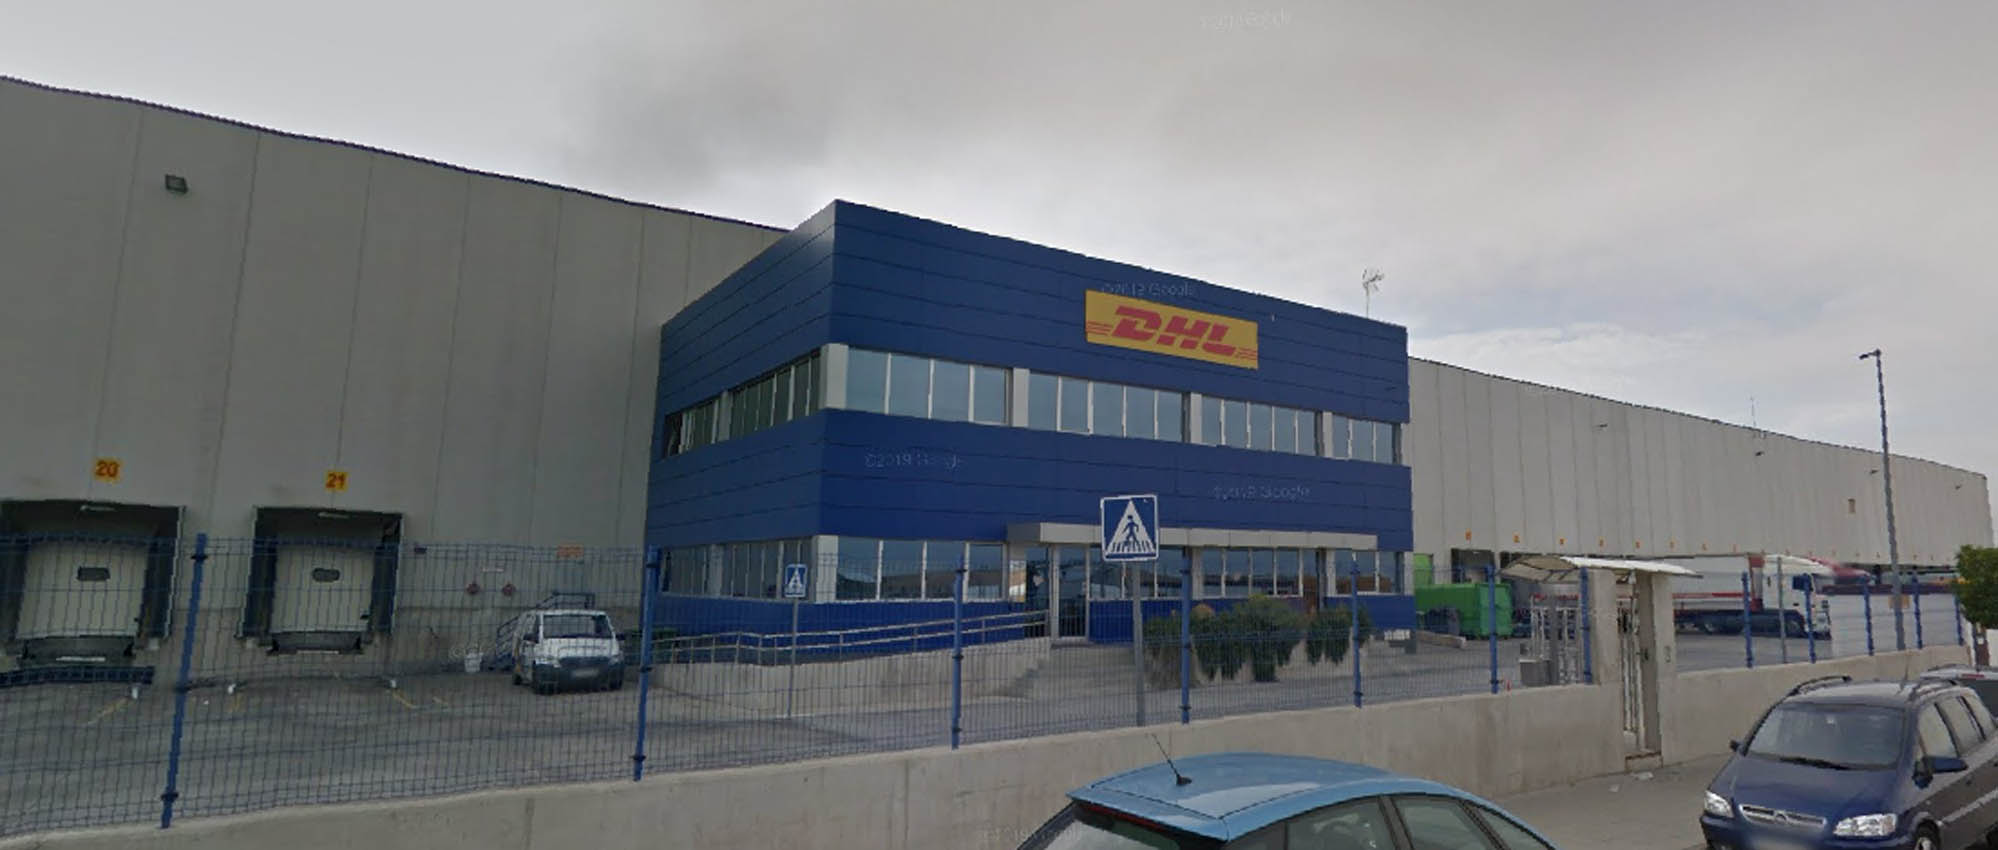 El accidente laboral se ha producido en la empresa DHL, en Ontígola (Toledo).